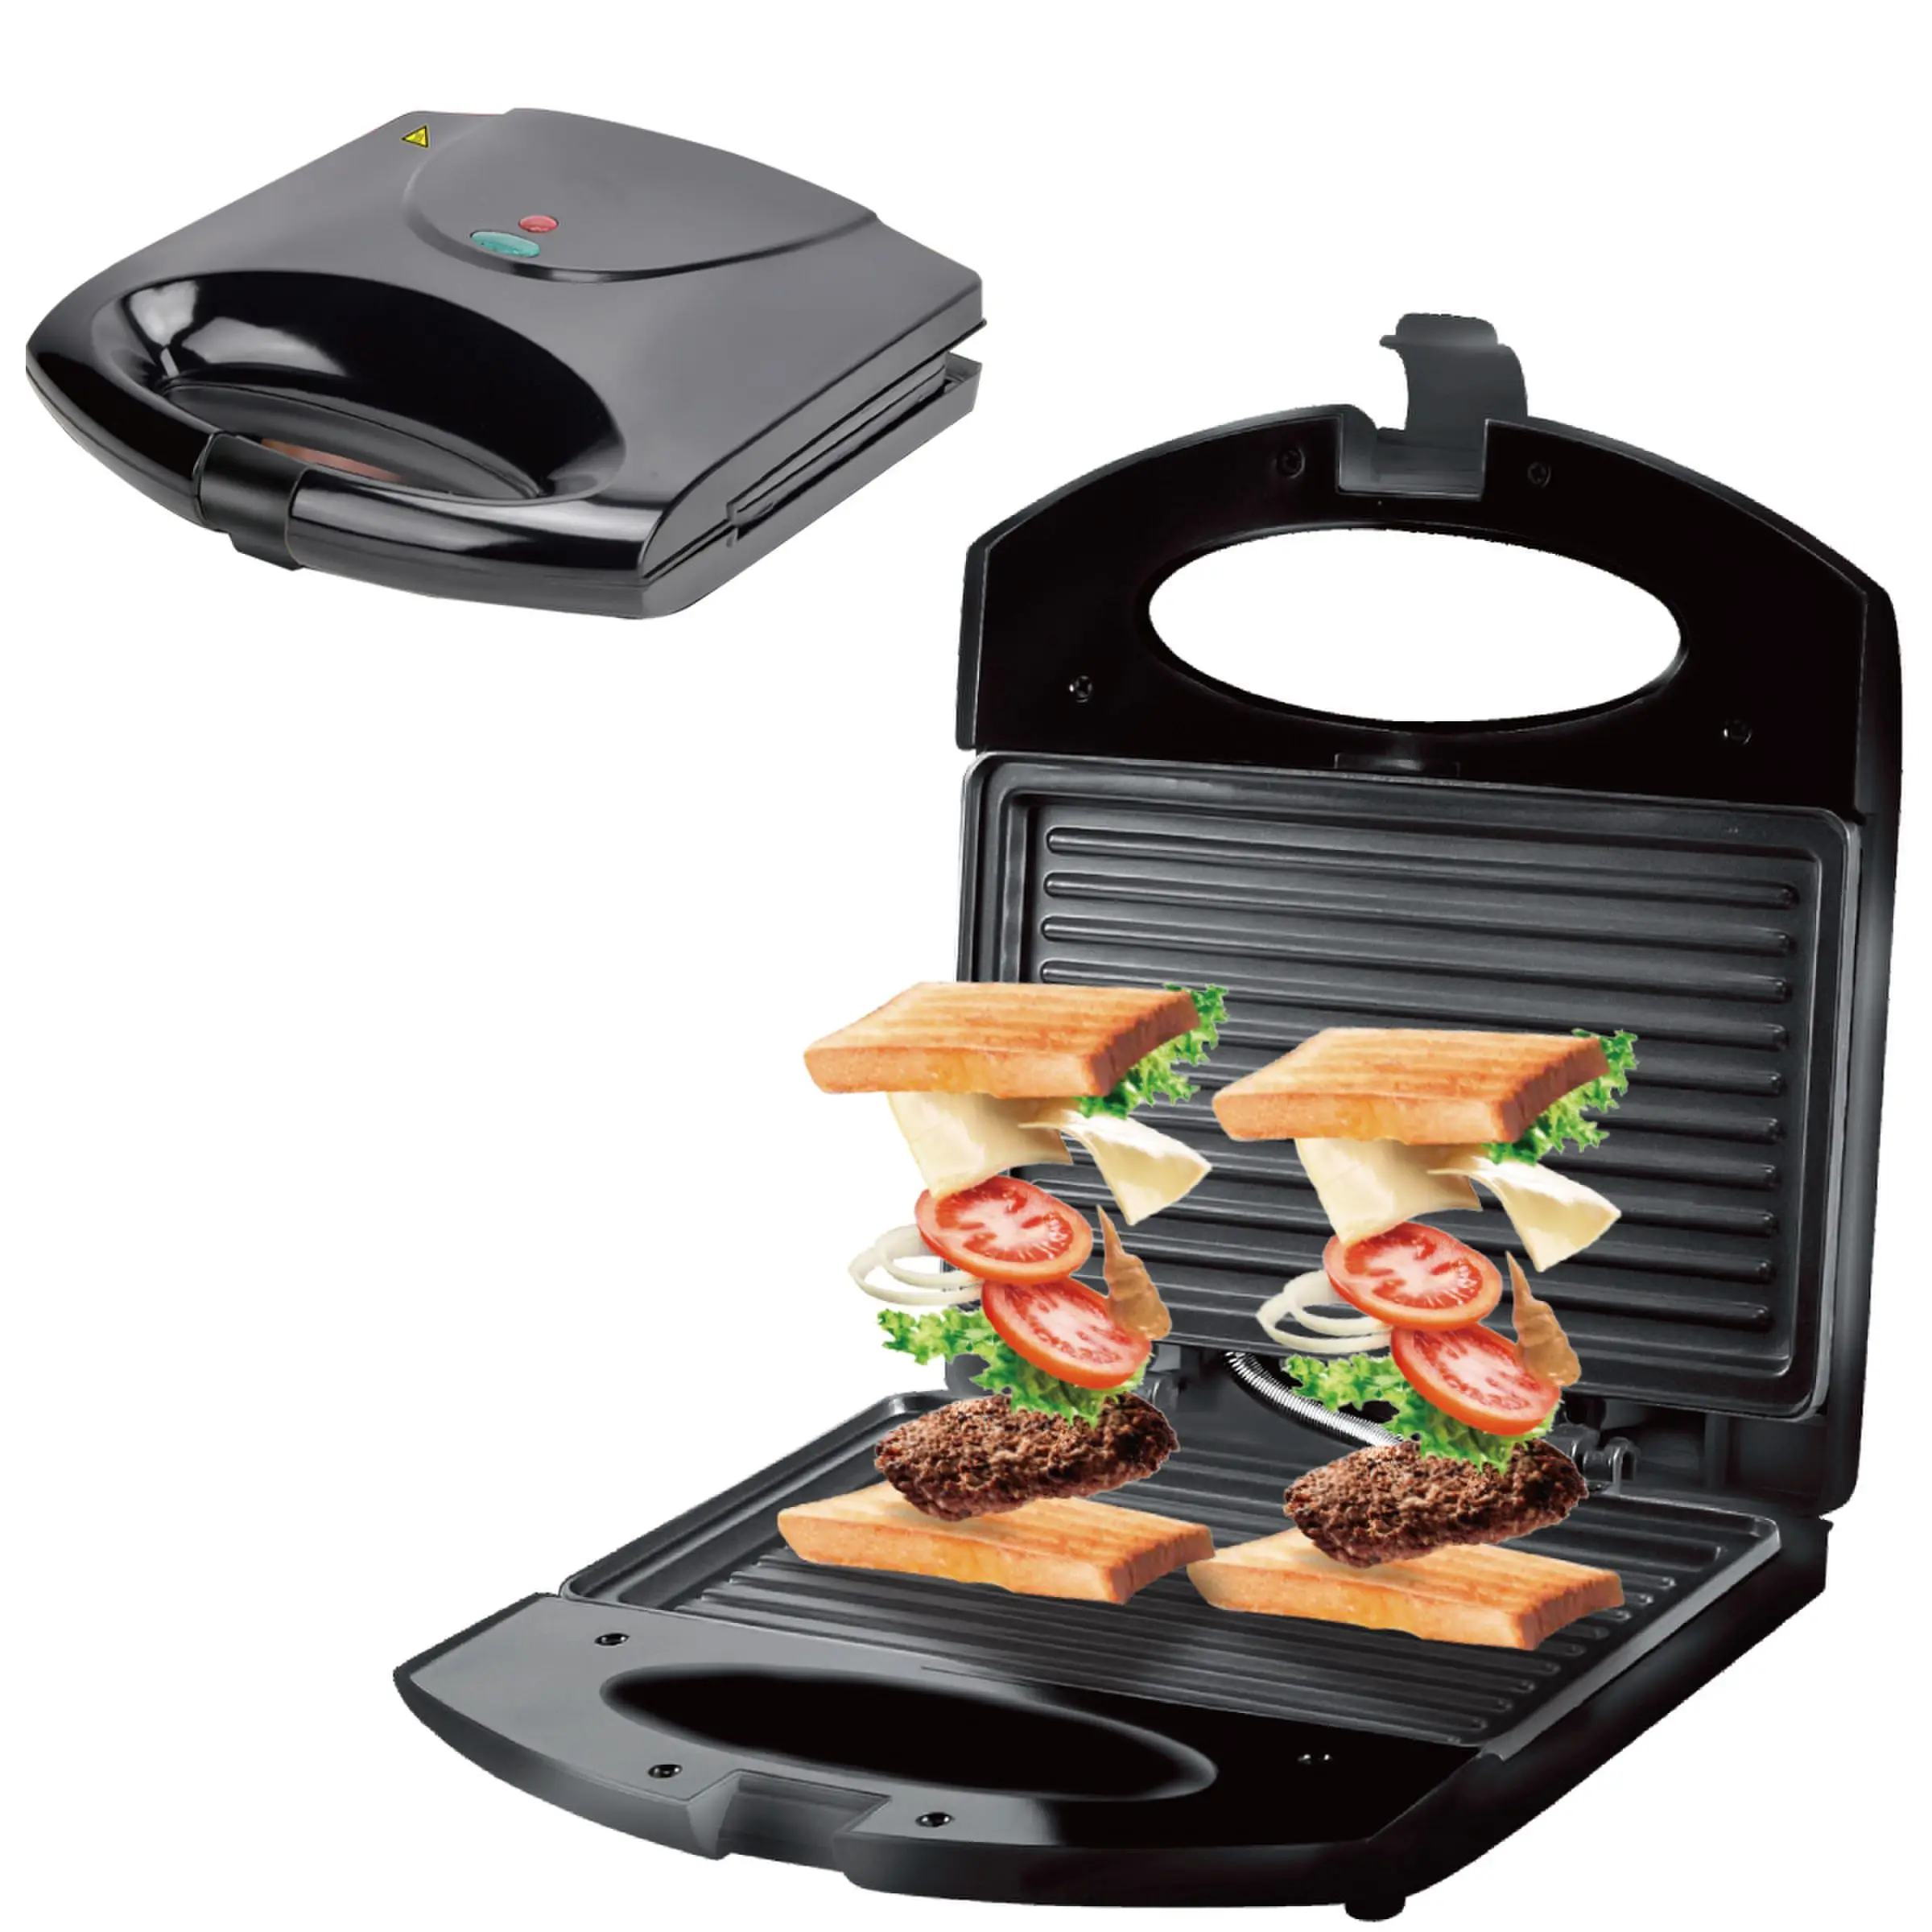 Factory 750W Double Sided Heating Pocket Press Sandwich Grill Breakfast Maker on m.alibaba.com